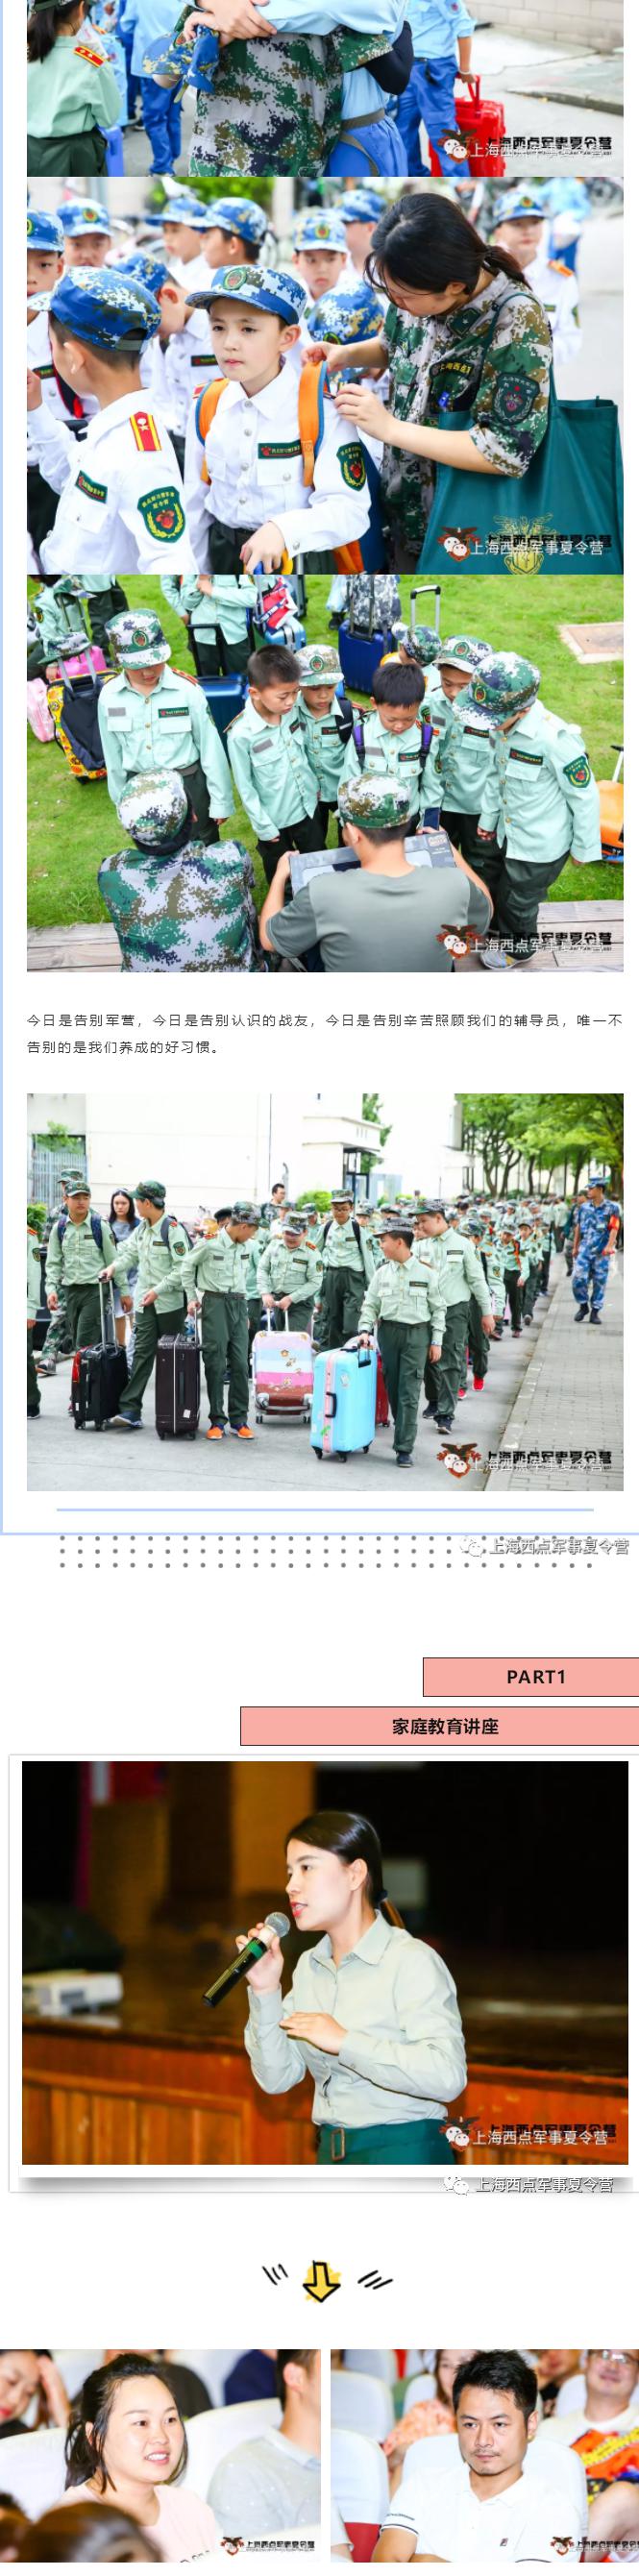 2019年上海西点军事夏令营第二期结营仪式